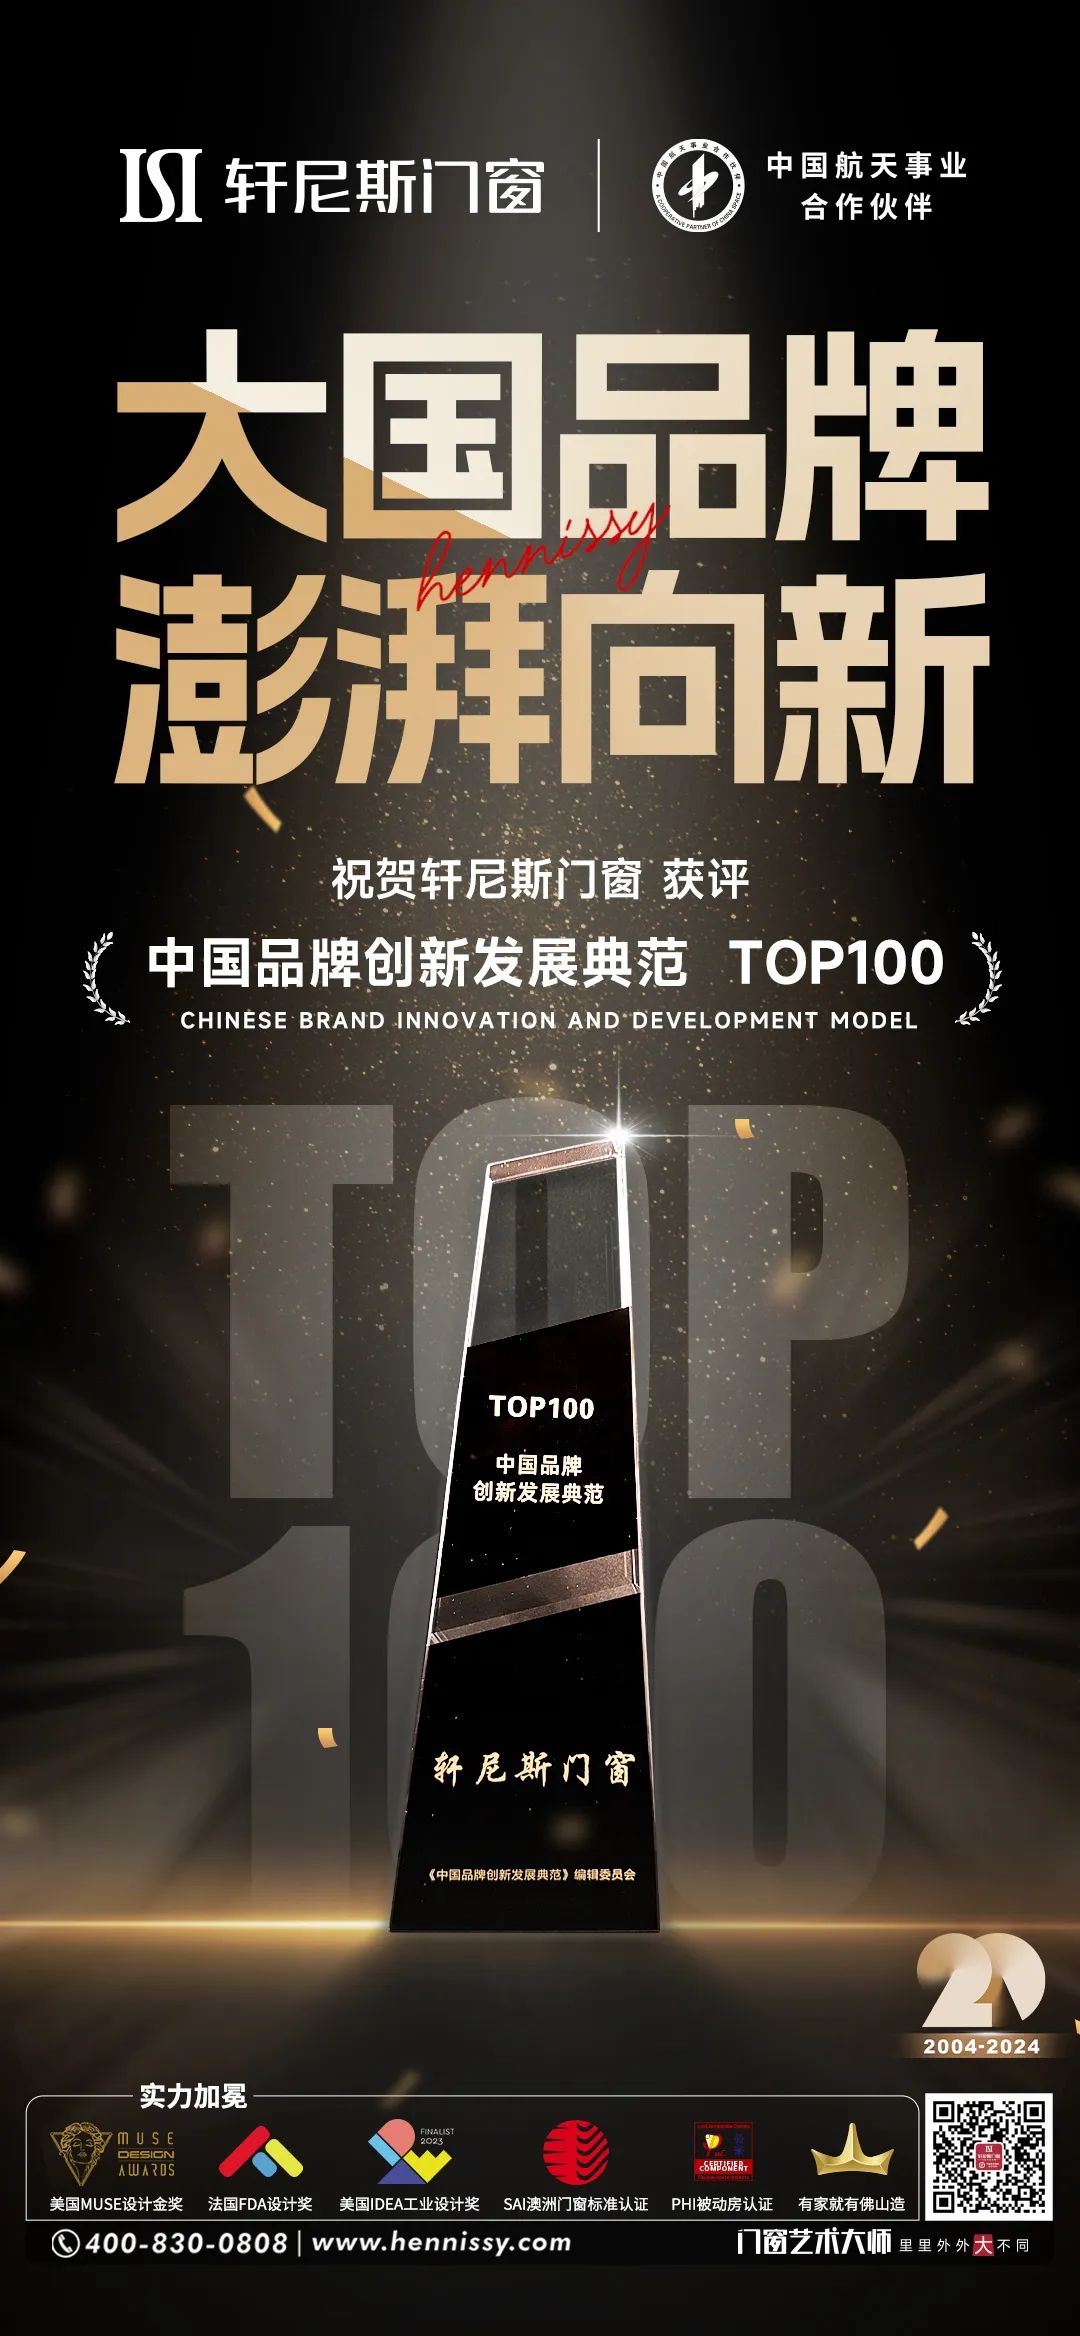 博亚体育app
门窗获评“中国品牌创新发展典范TOP100”